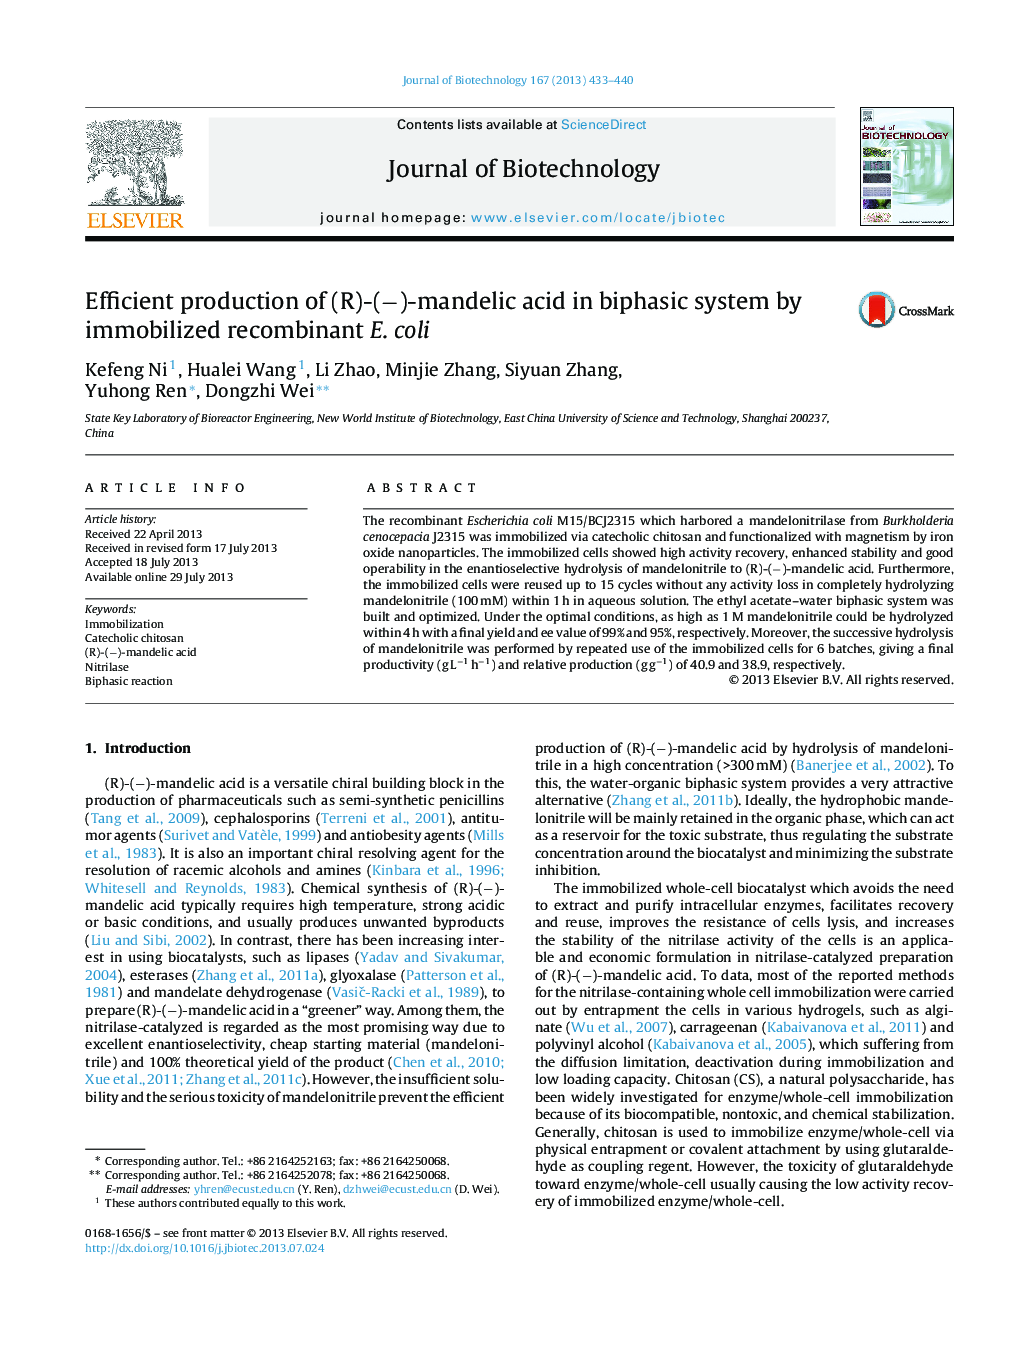 Efficient production of (R)-(â)-mandelic acid in biphasic system by immobilized recombinant E. coli